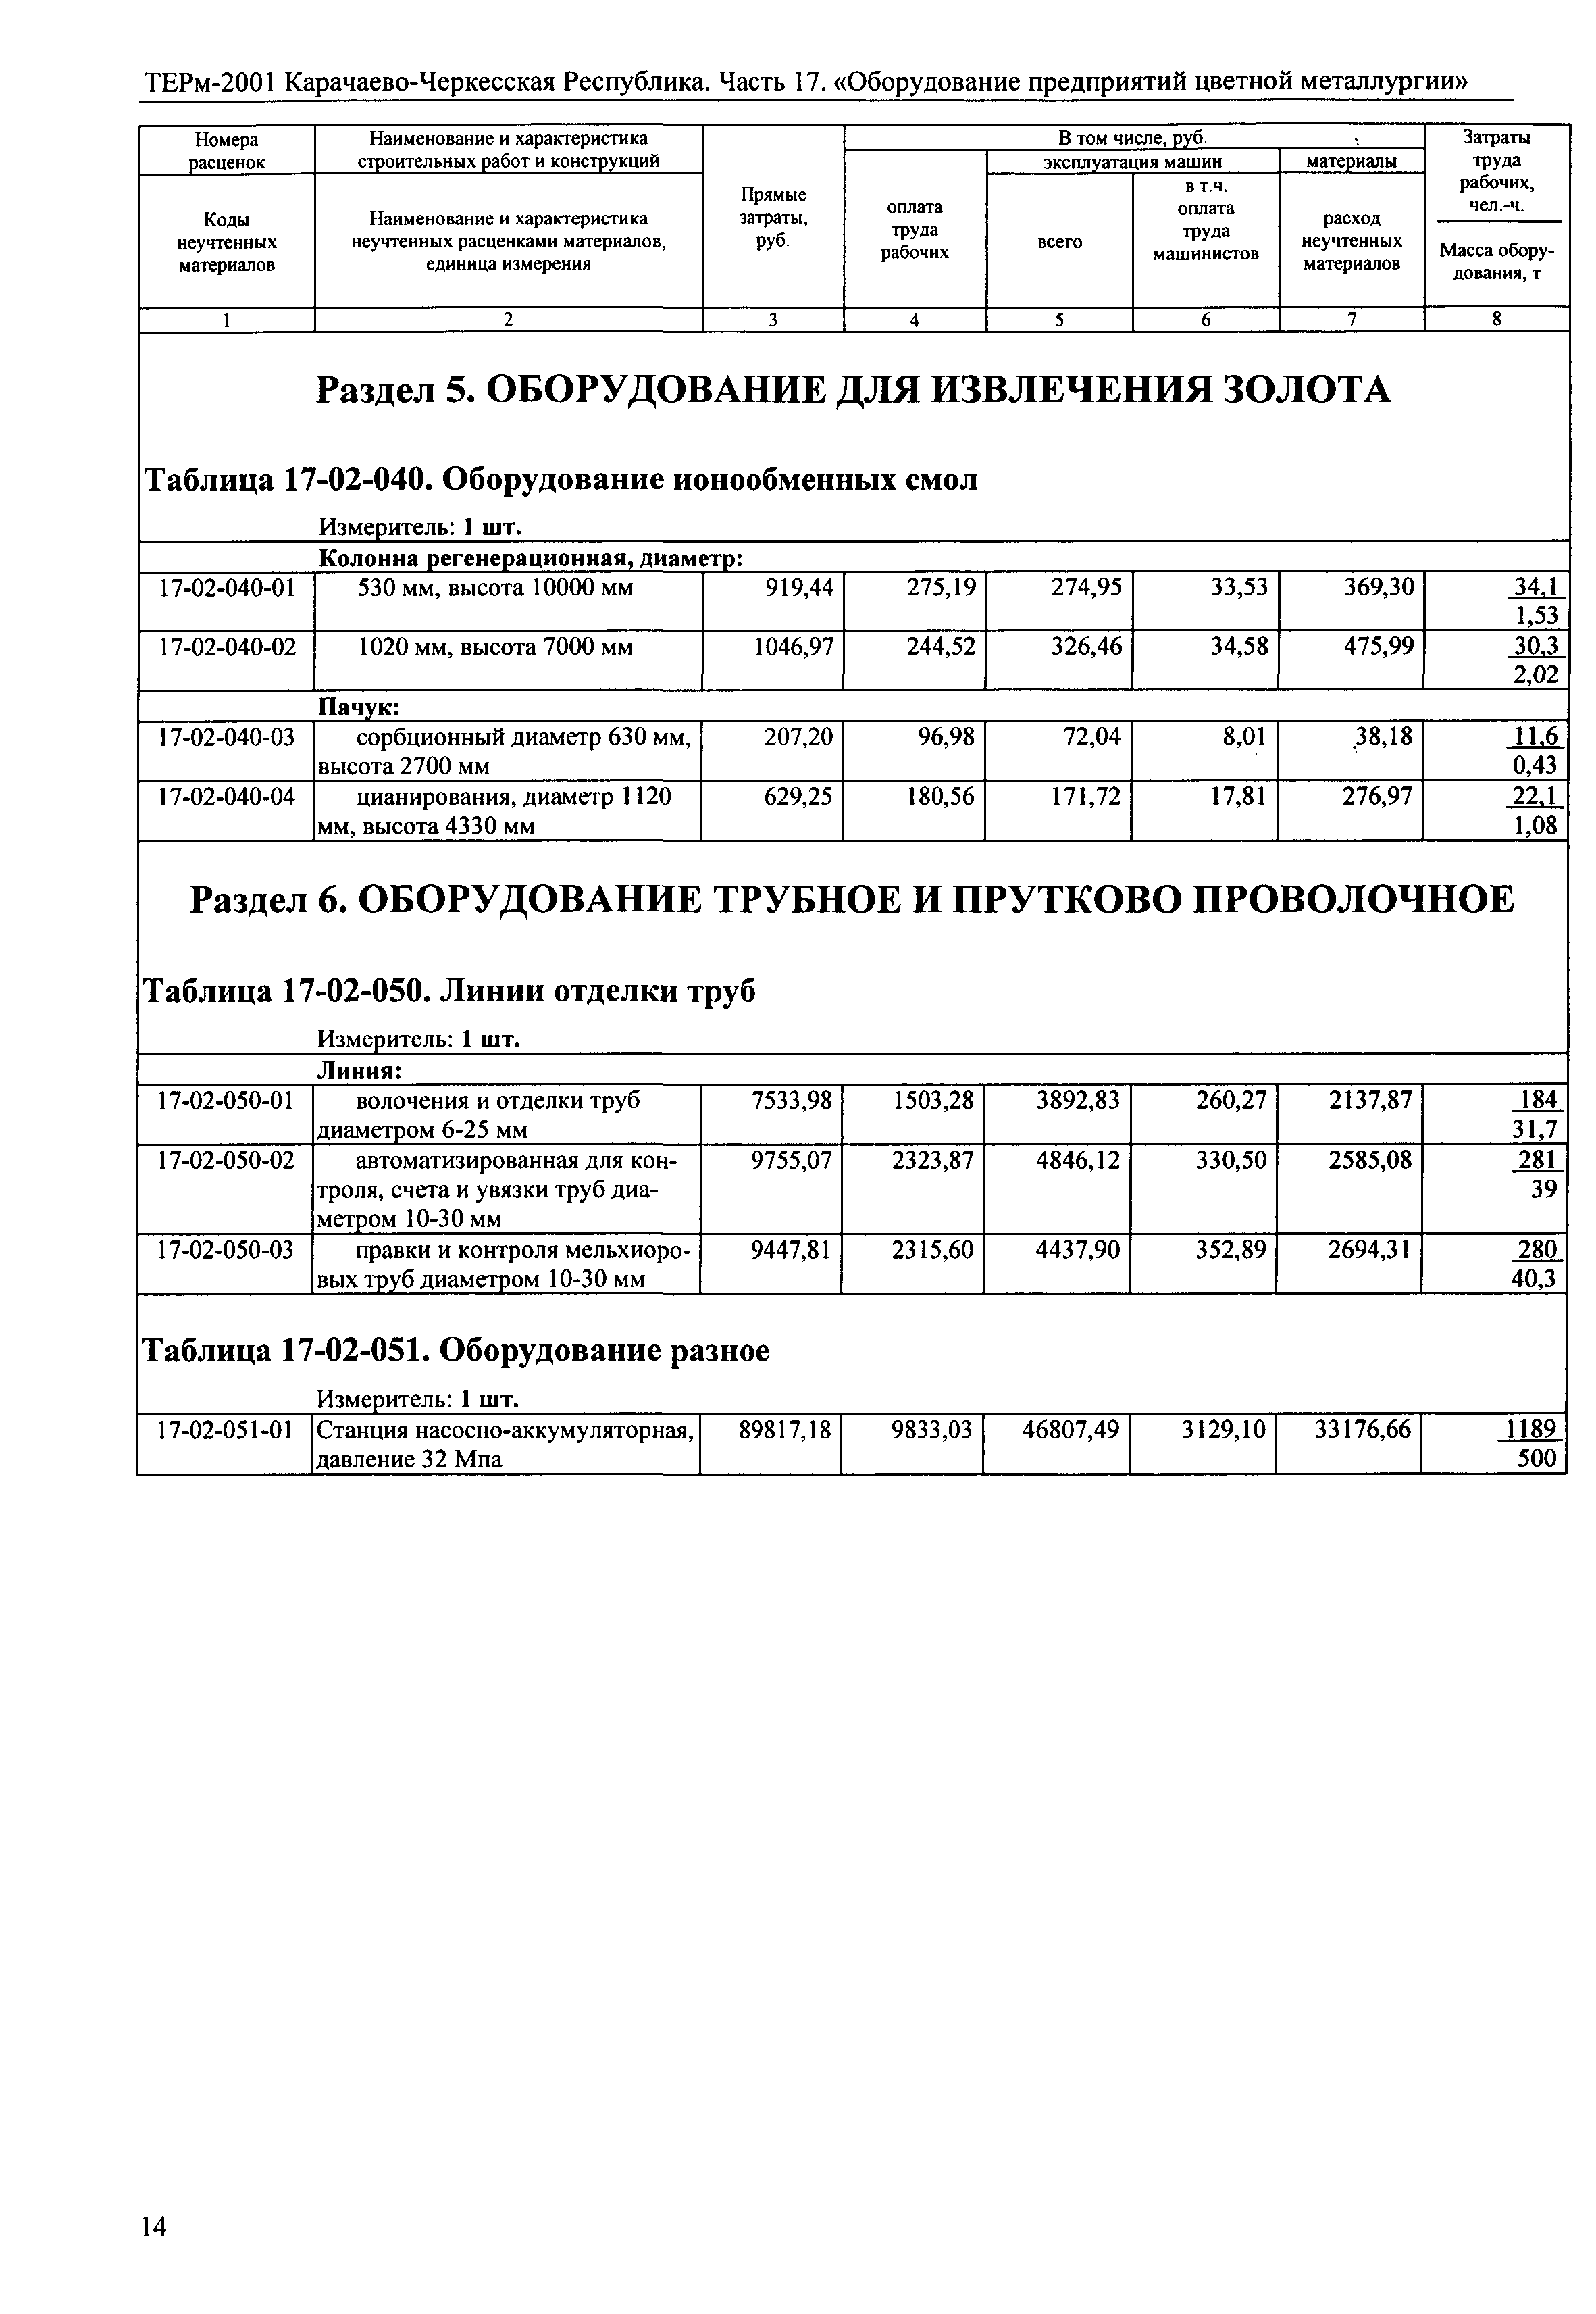 ТЕРм Карачаево-Черкесская Республика 17-2001